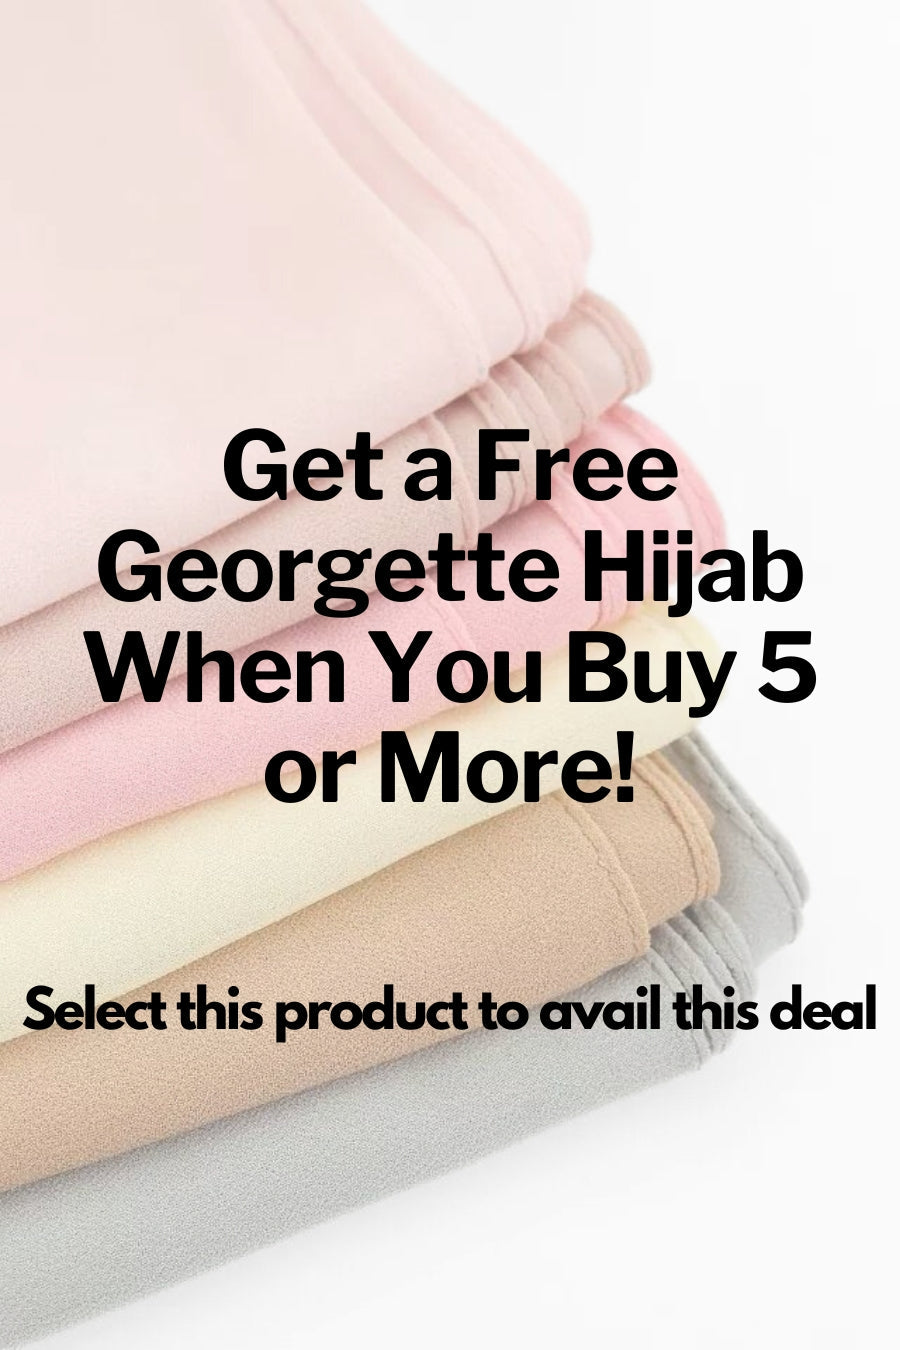 Georgette Hijabs - Buy 5Get 1 Free